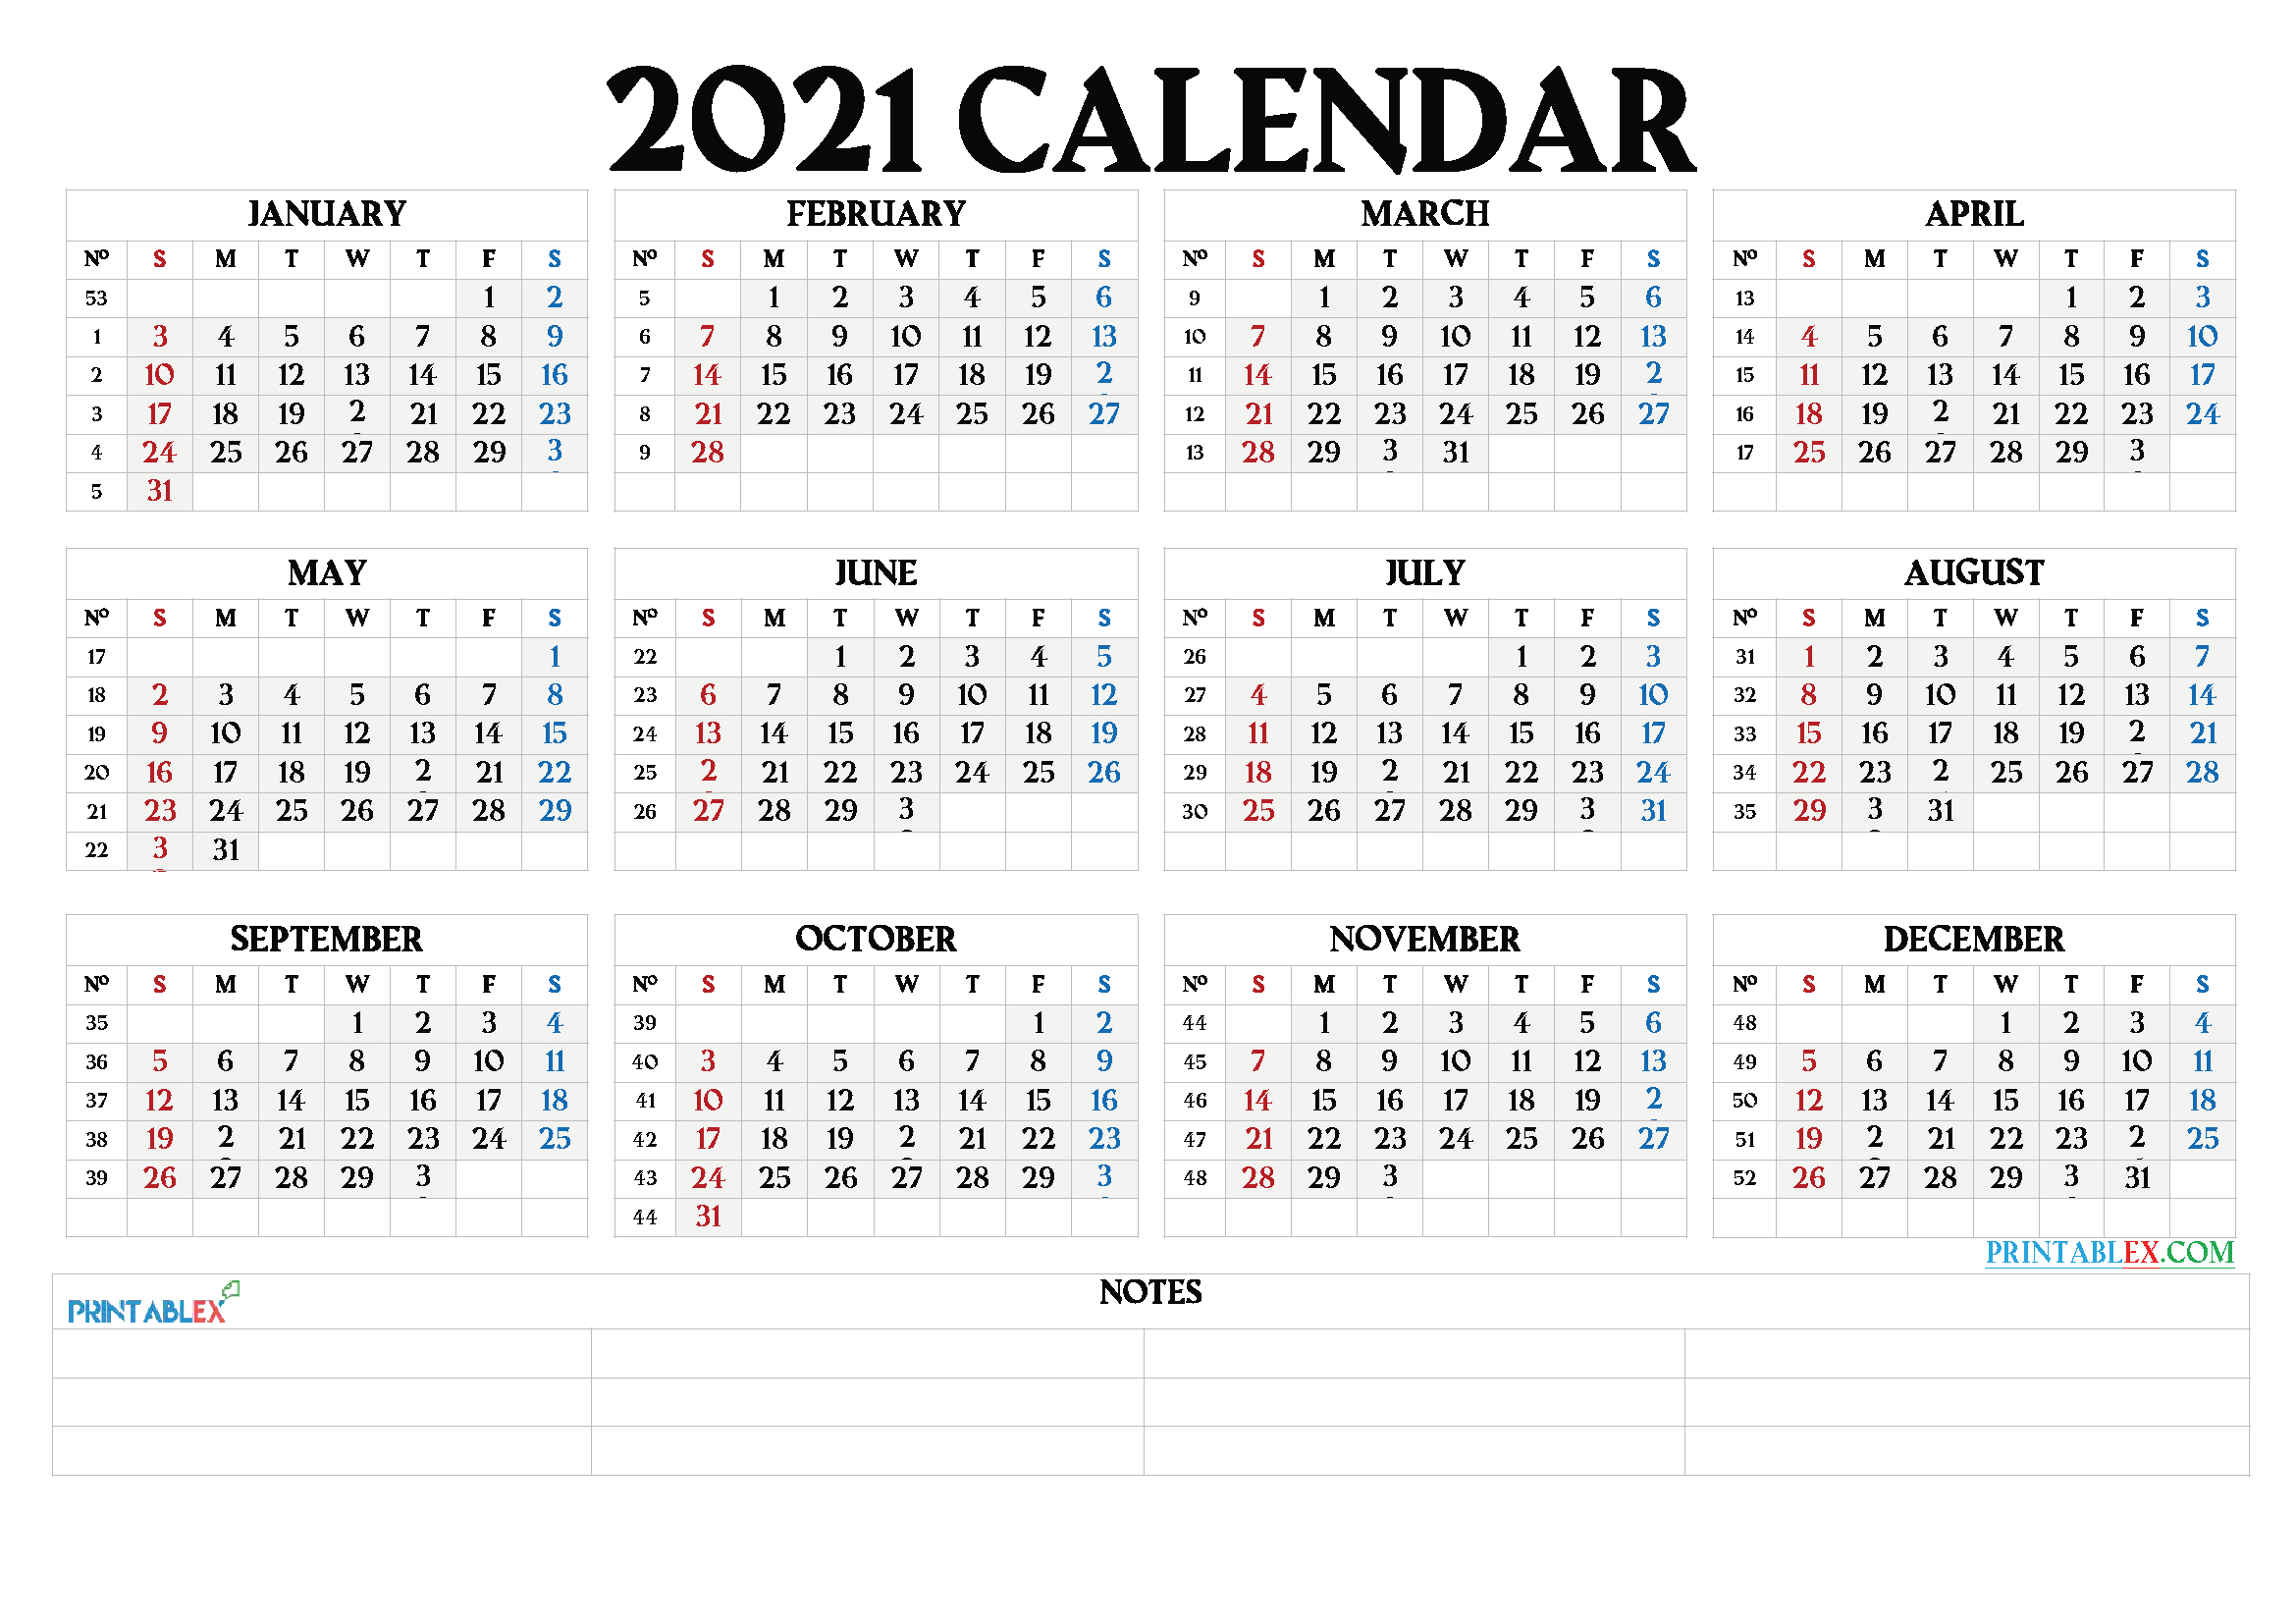 Printable 2021 Calendar By Month - 21Ytw66-Month Printable 2021